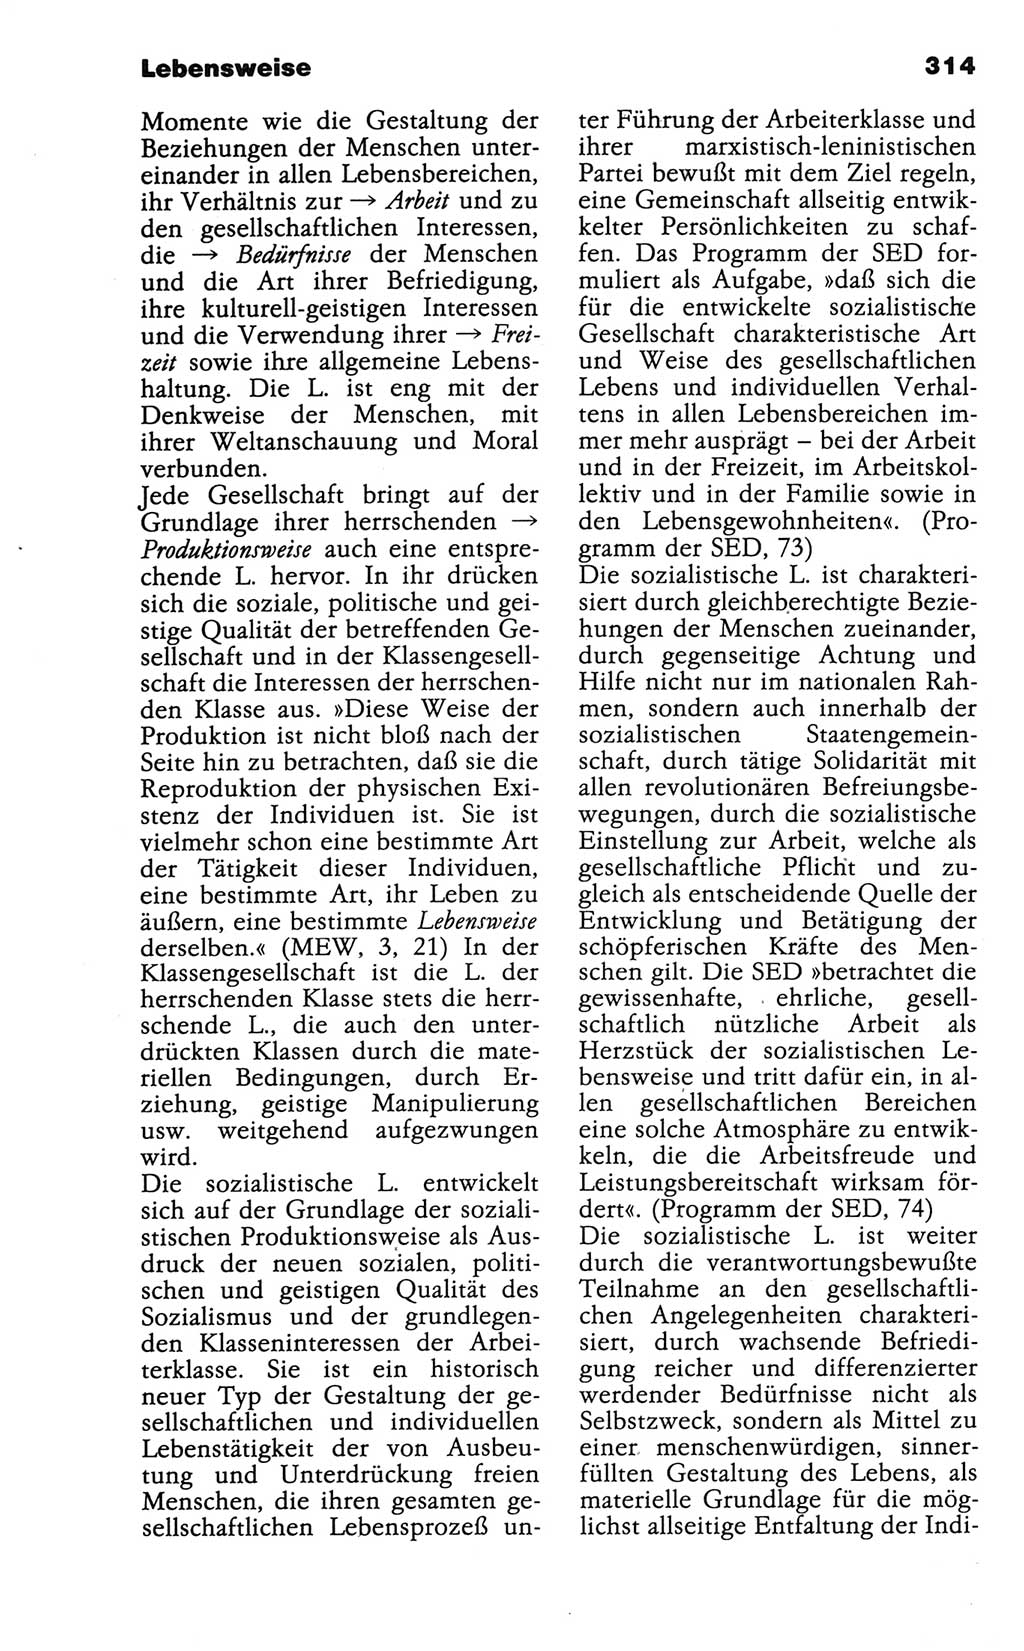 Wörterbuch der marxistisch-leninistischen Philosophie [Deutsche Demokratische Republik (DDR)] 1986, Seite 314 (Wb. ML Phil. DDR 1986, S. 314)